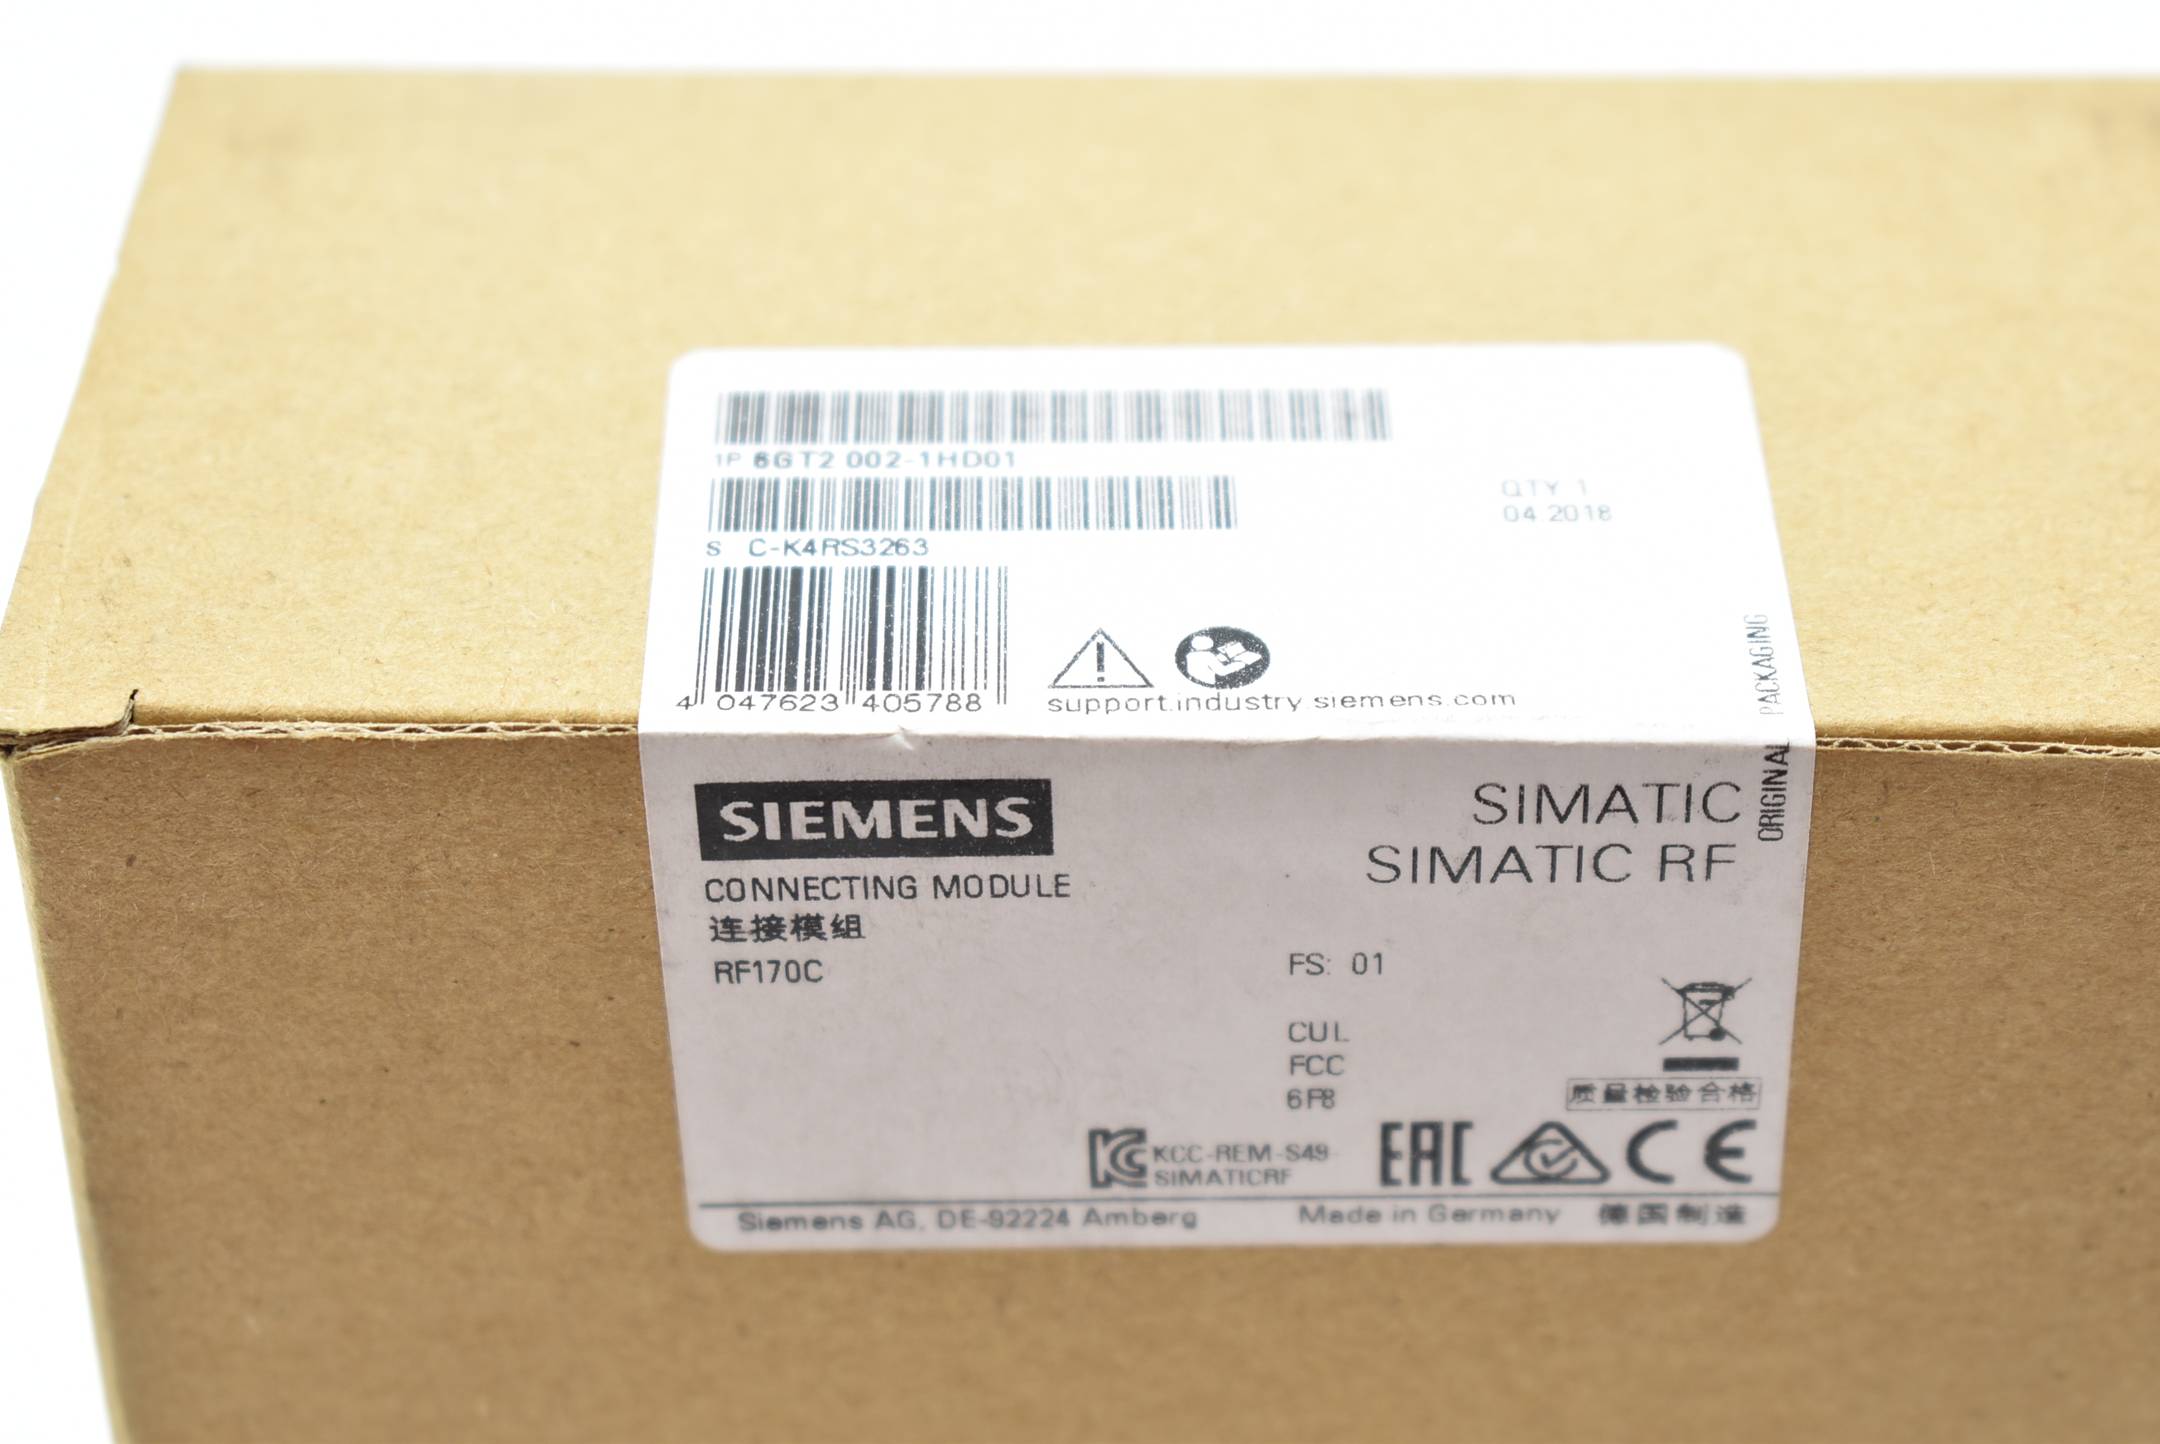 Siemens simatic RF Connecting Module 6GT2 002-1HD01 ( 6GT2002-1HD01 ) FS.01